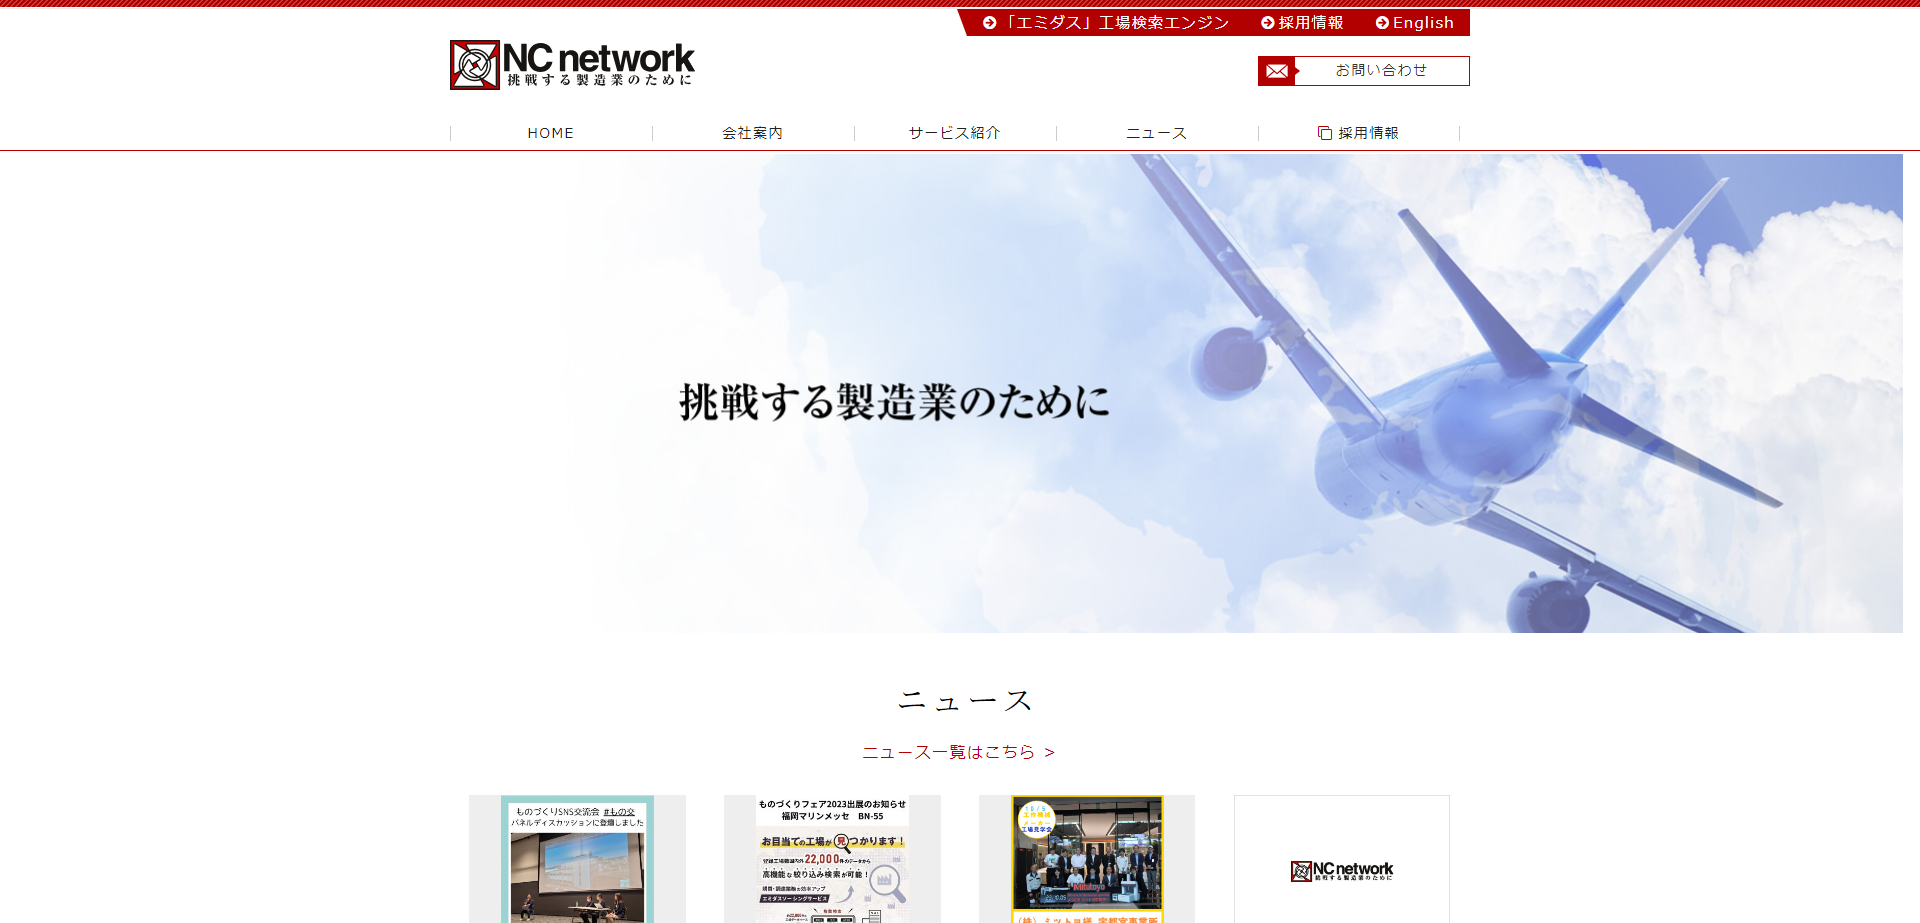 株式会社NCネットワークの株式会社NCネットワークサービス